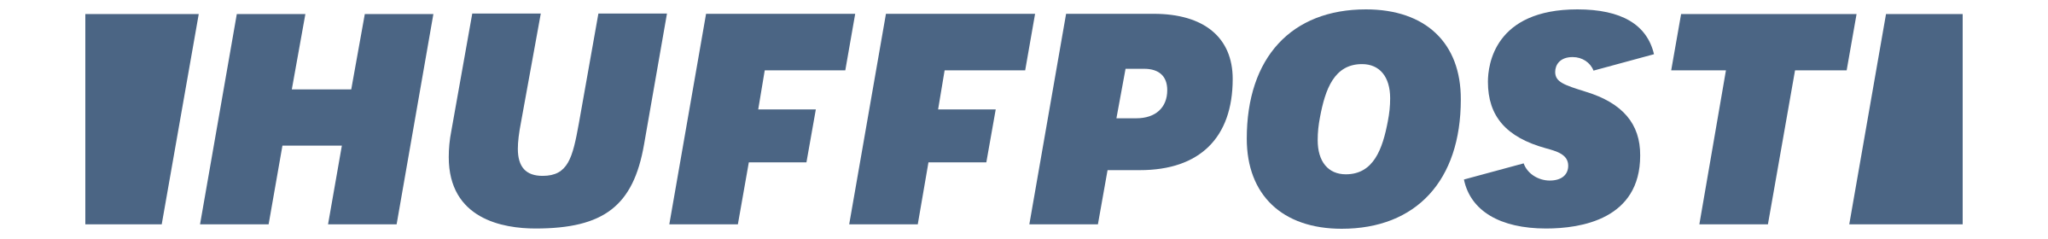 vt-hp-logo